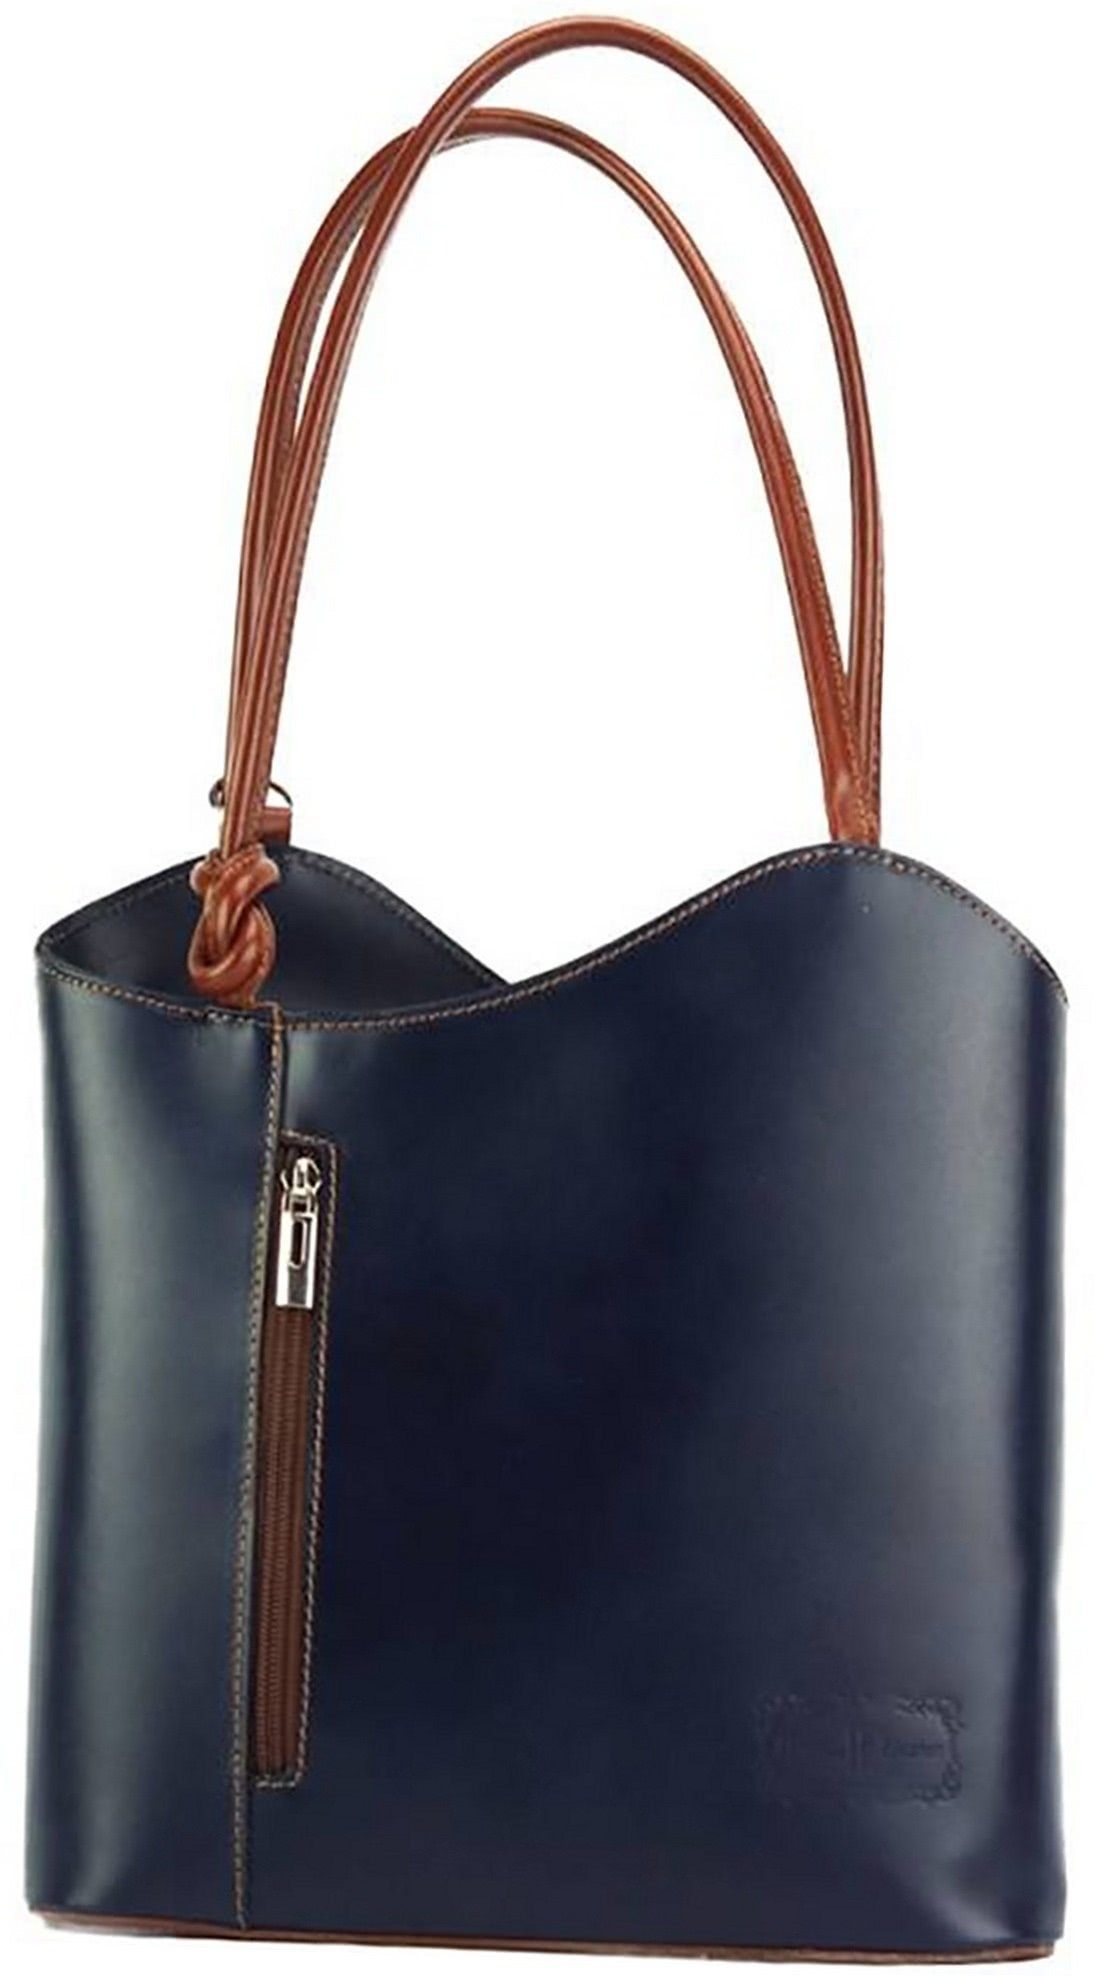 FLORENCE Schultertasche Florence 2in1 Echtleder Damen Handtasche, Damen  Tasche aus Echtleder in blau, braun, ca. 28cm Breite, Made-In Italy